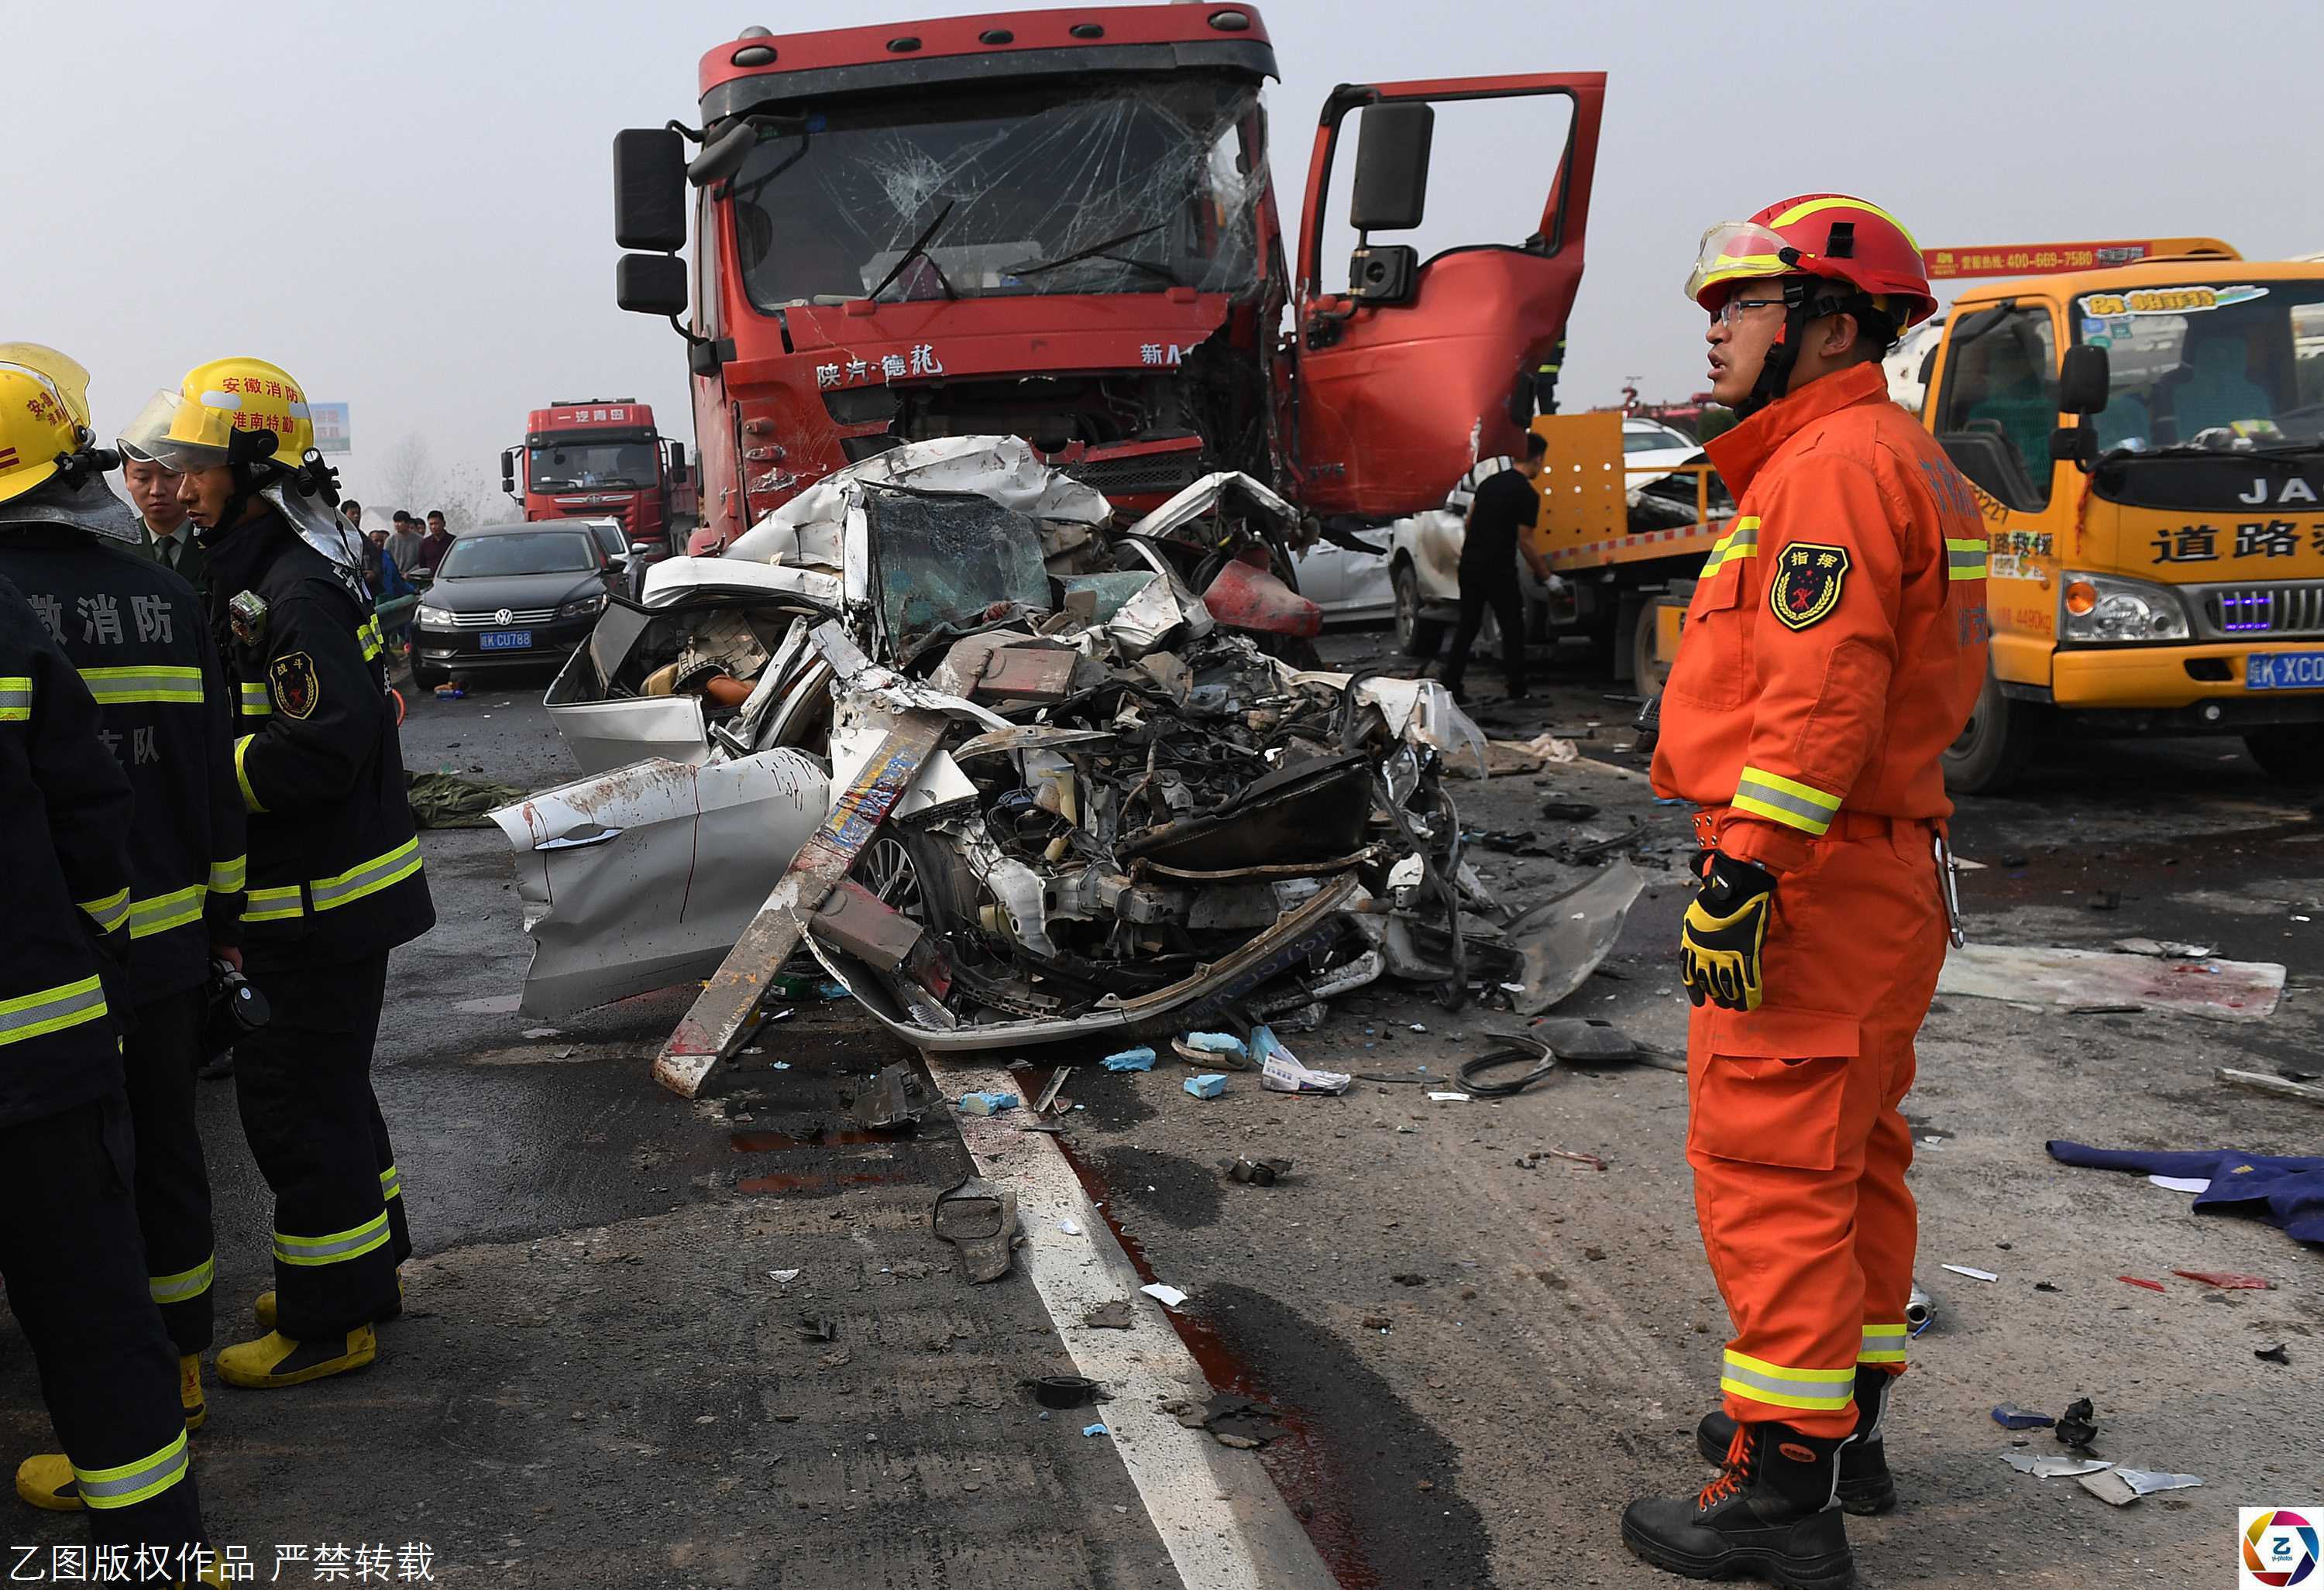 发生在2017年11月15日,安徽滁新高速发生连环撞车致18人事故,截至目前